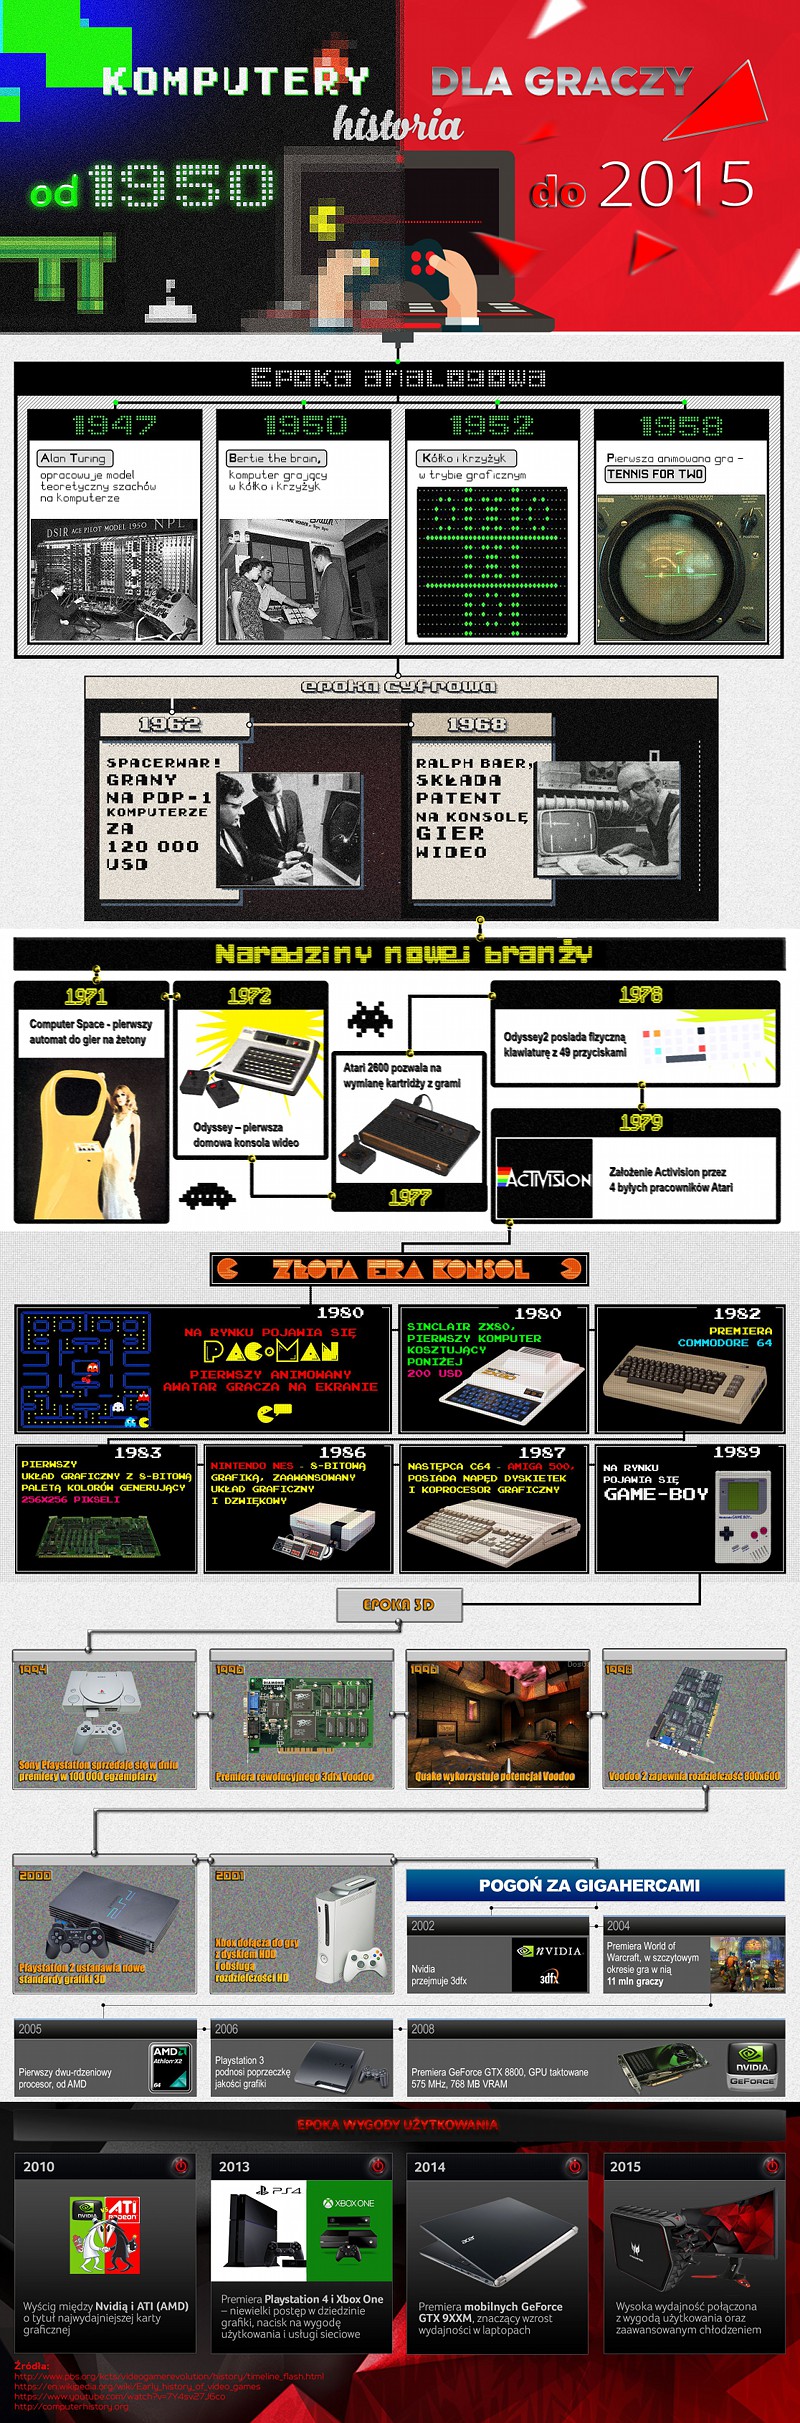 Komputery dla graczy - historia od 1950 do 2015 roku